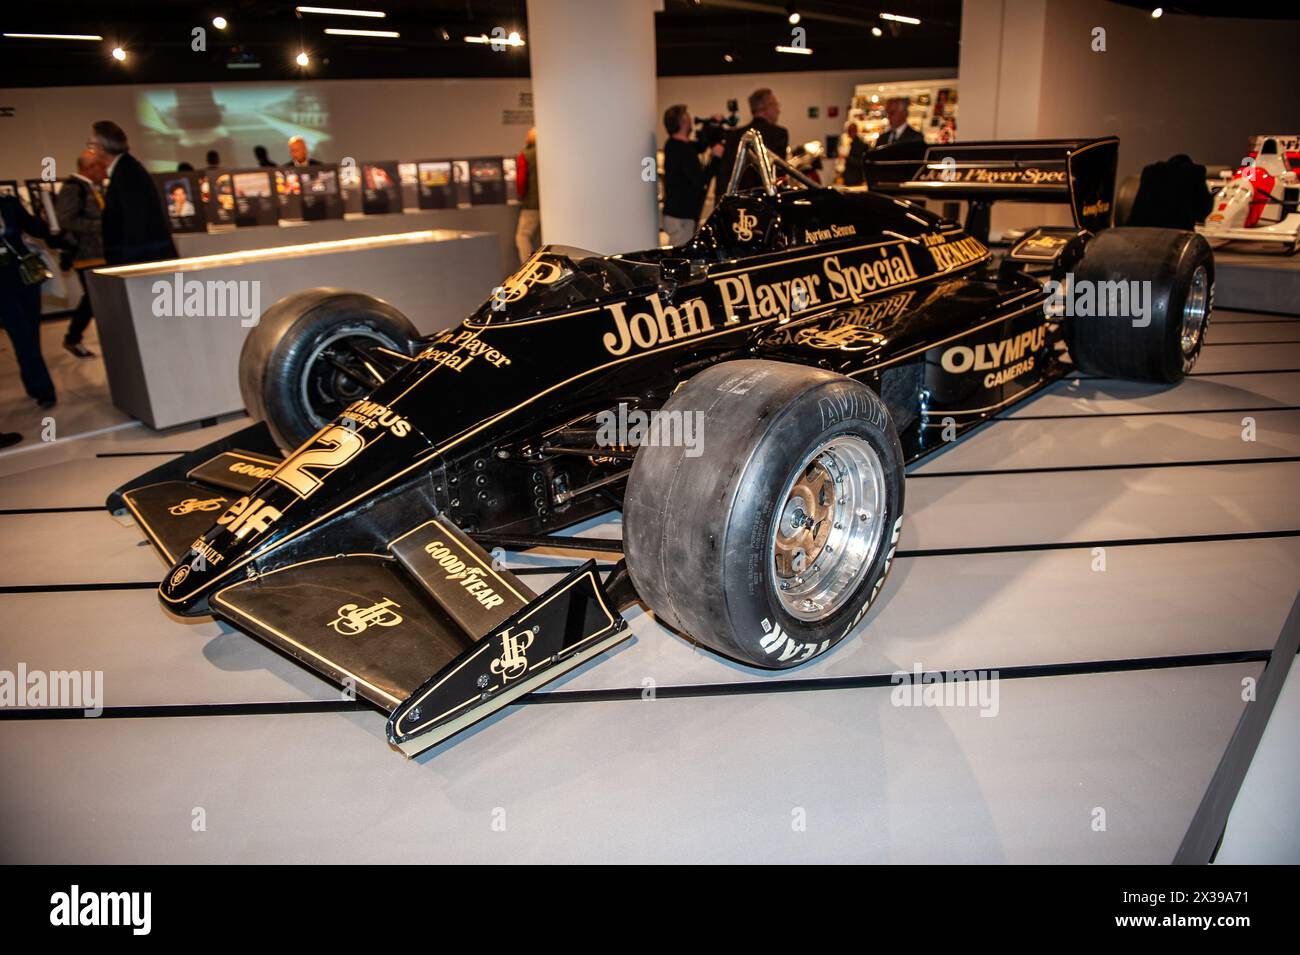 04/23/2024 Turin (Italie) la Lotus John Player Special 97T2 Renault (1985) avec laquelle Ayrton Senna remporte son premier Grand Prix de F1 Banque D'Images